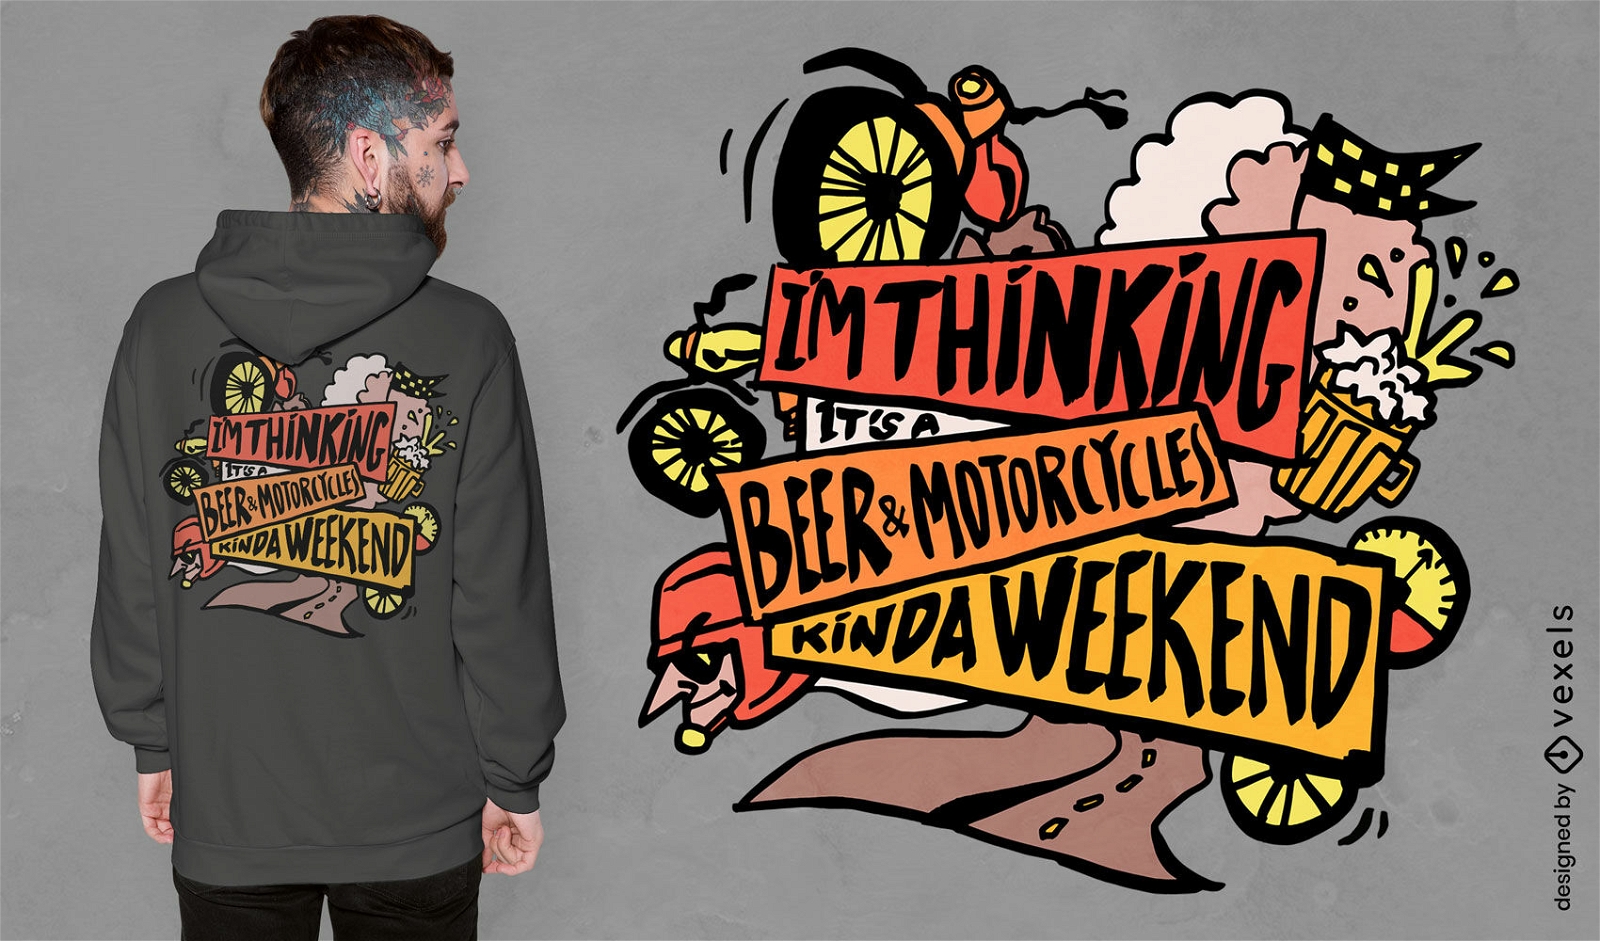 Bier und Motorrad lustiges Zitat T-Shirt Design